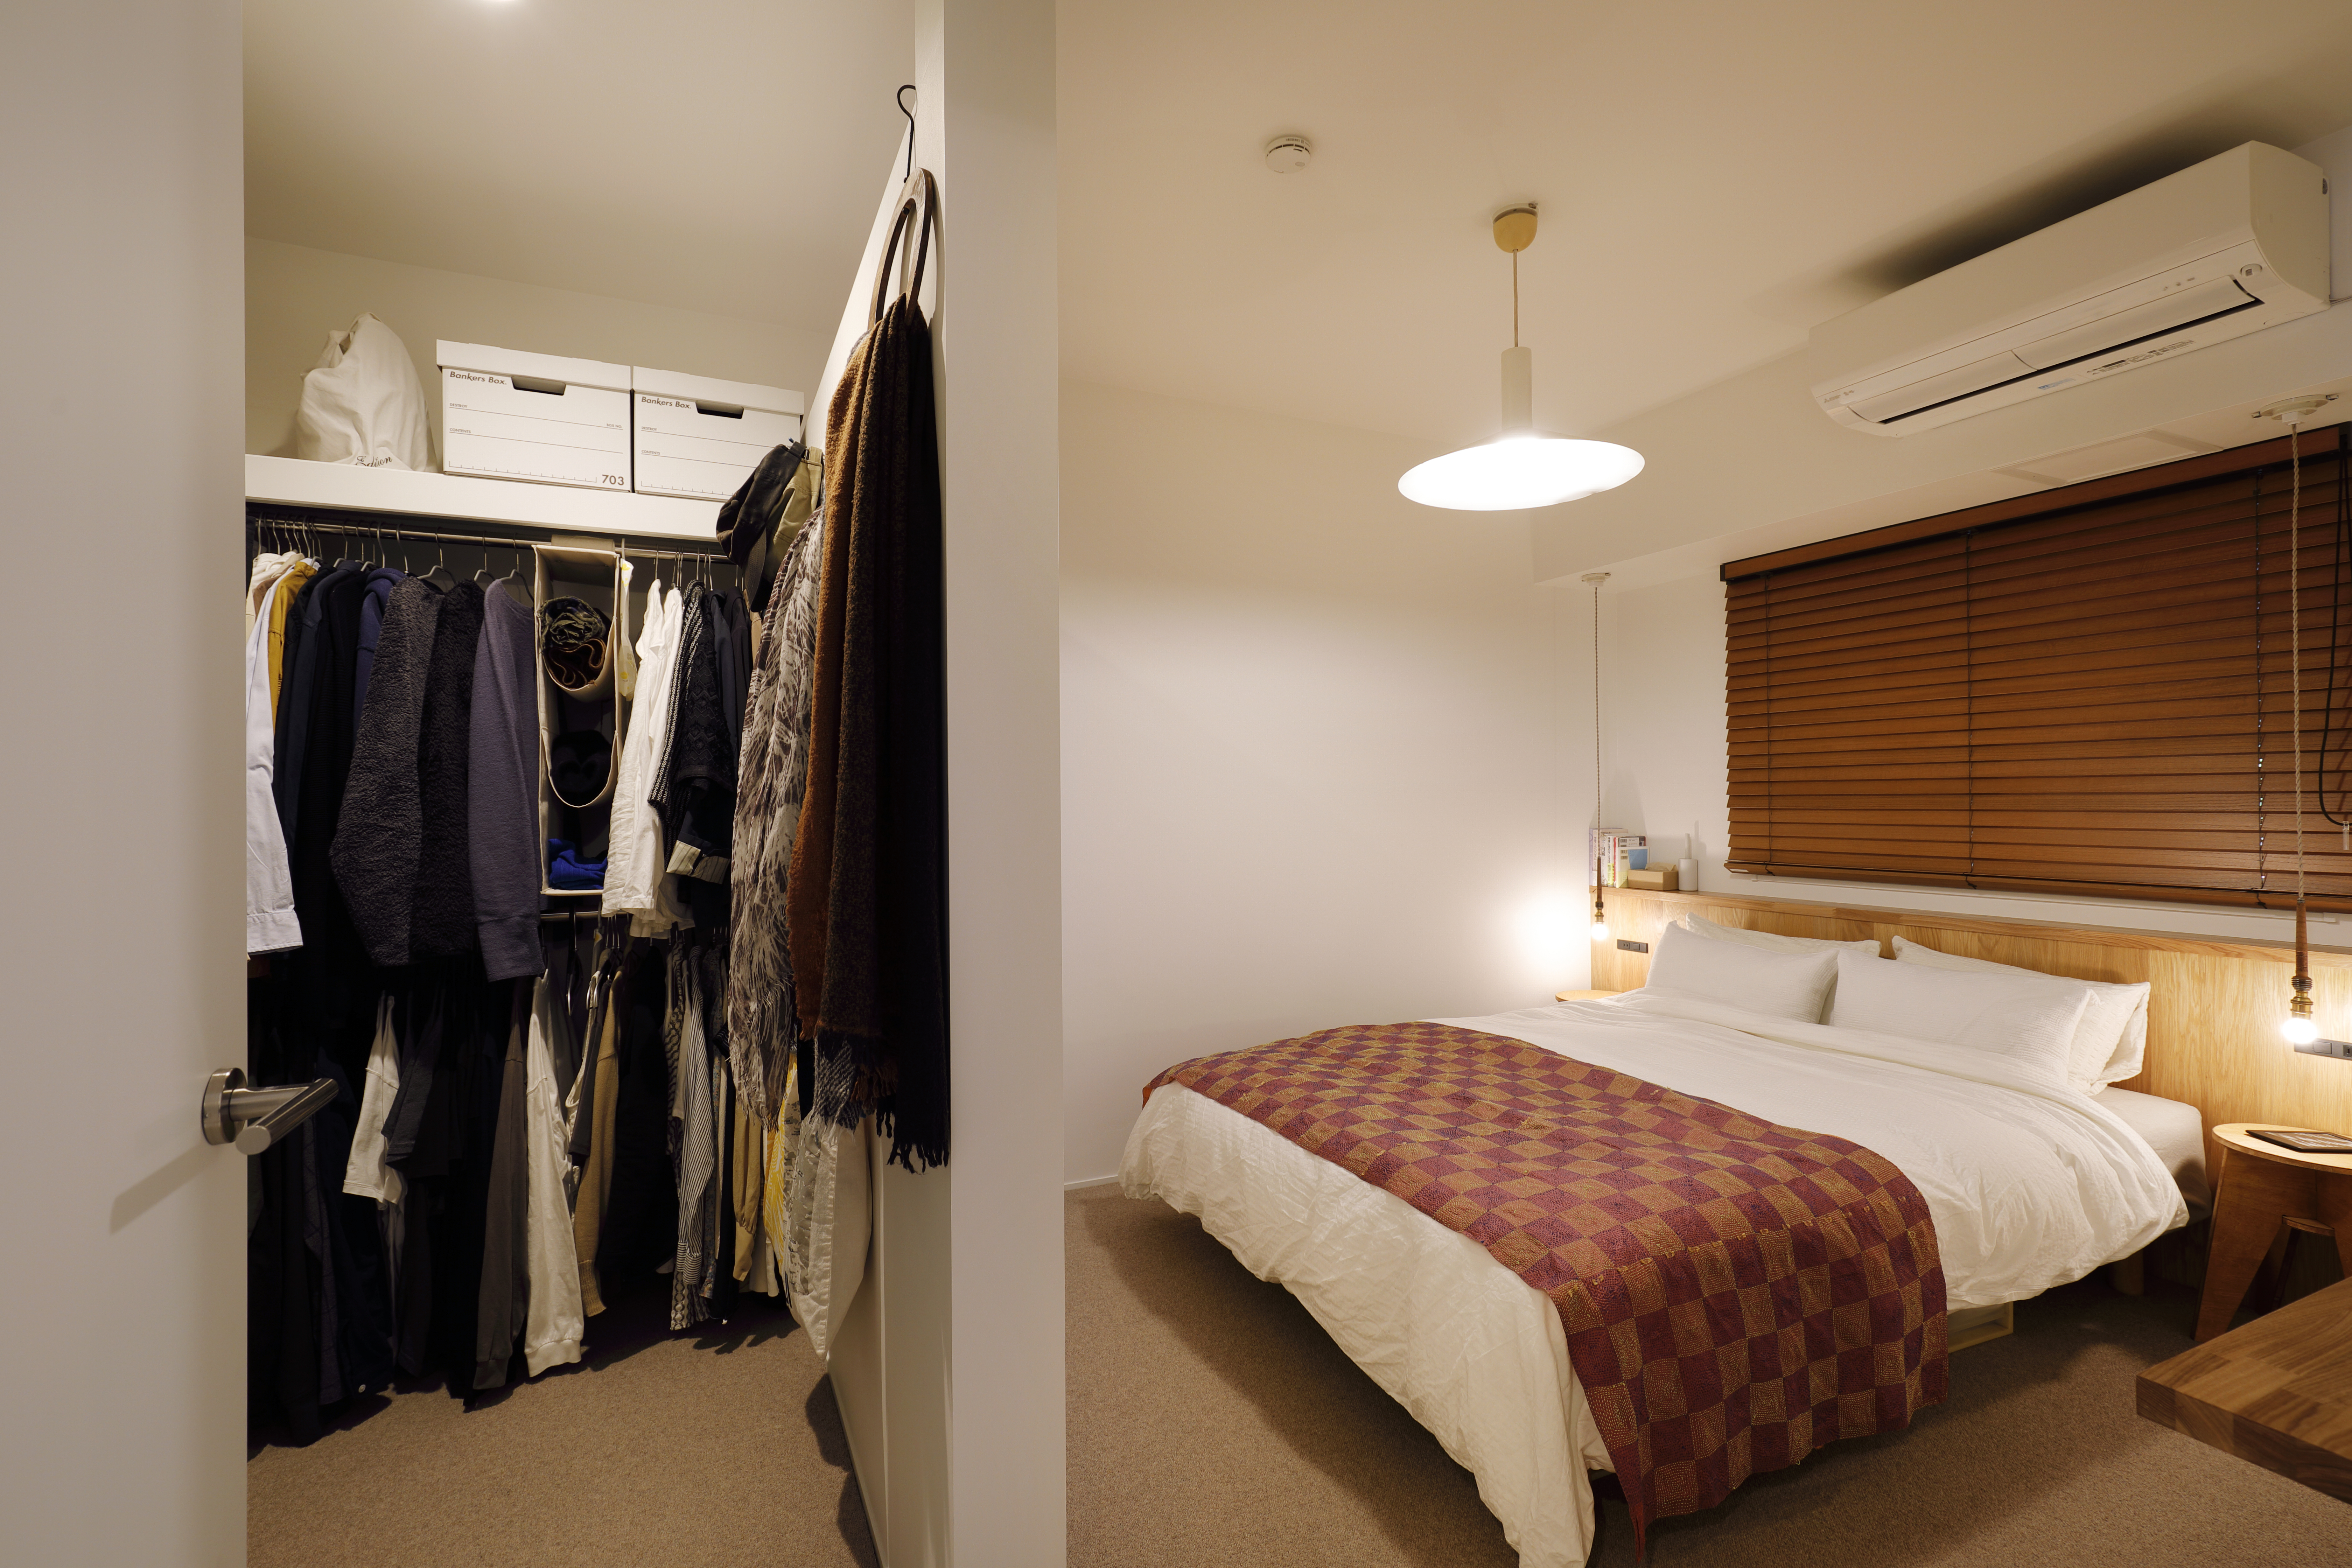 寝室6 8畳の快適なレイアウトとは おしゃれで動線もいい配置づくりのポイント リノベーションのshuken Re マンション 住宅 中古物件をリフォームやリノベで住みやすくデザインし施工します